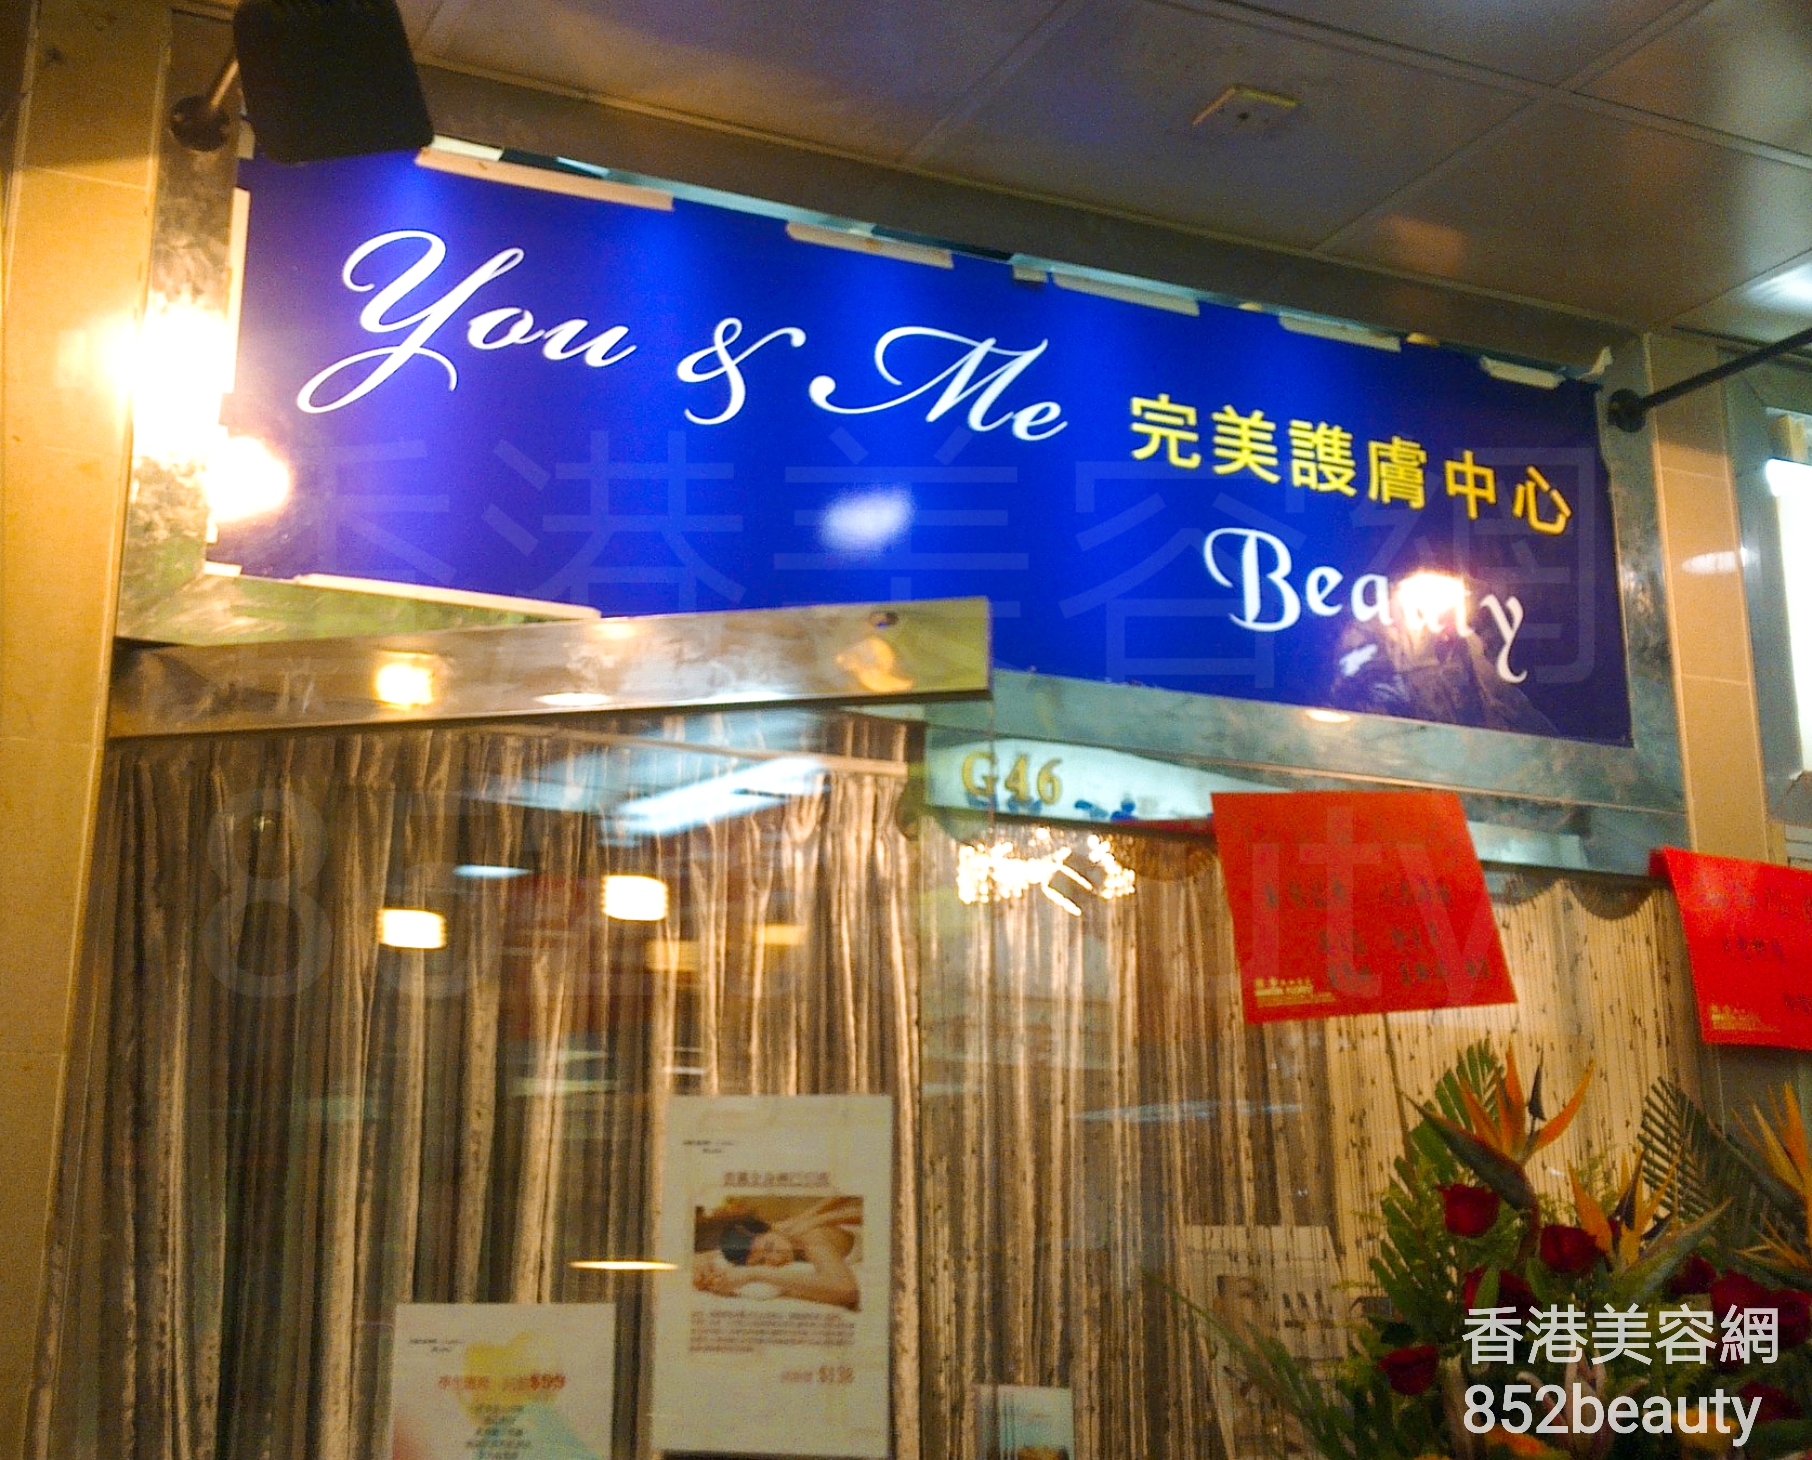 香港美容網 Hong Kong Beauty Salon 美容院 / 美容師: You & Me beauty 完美護膚中心